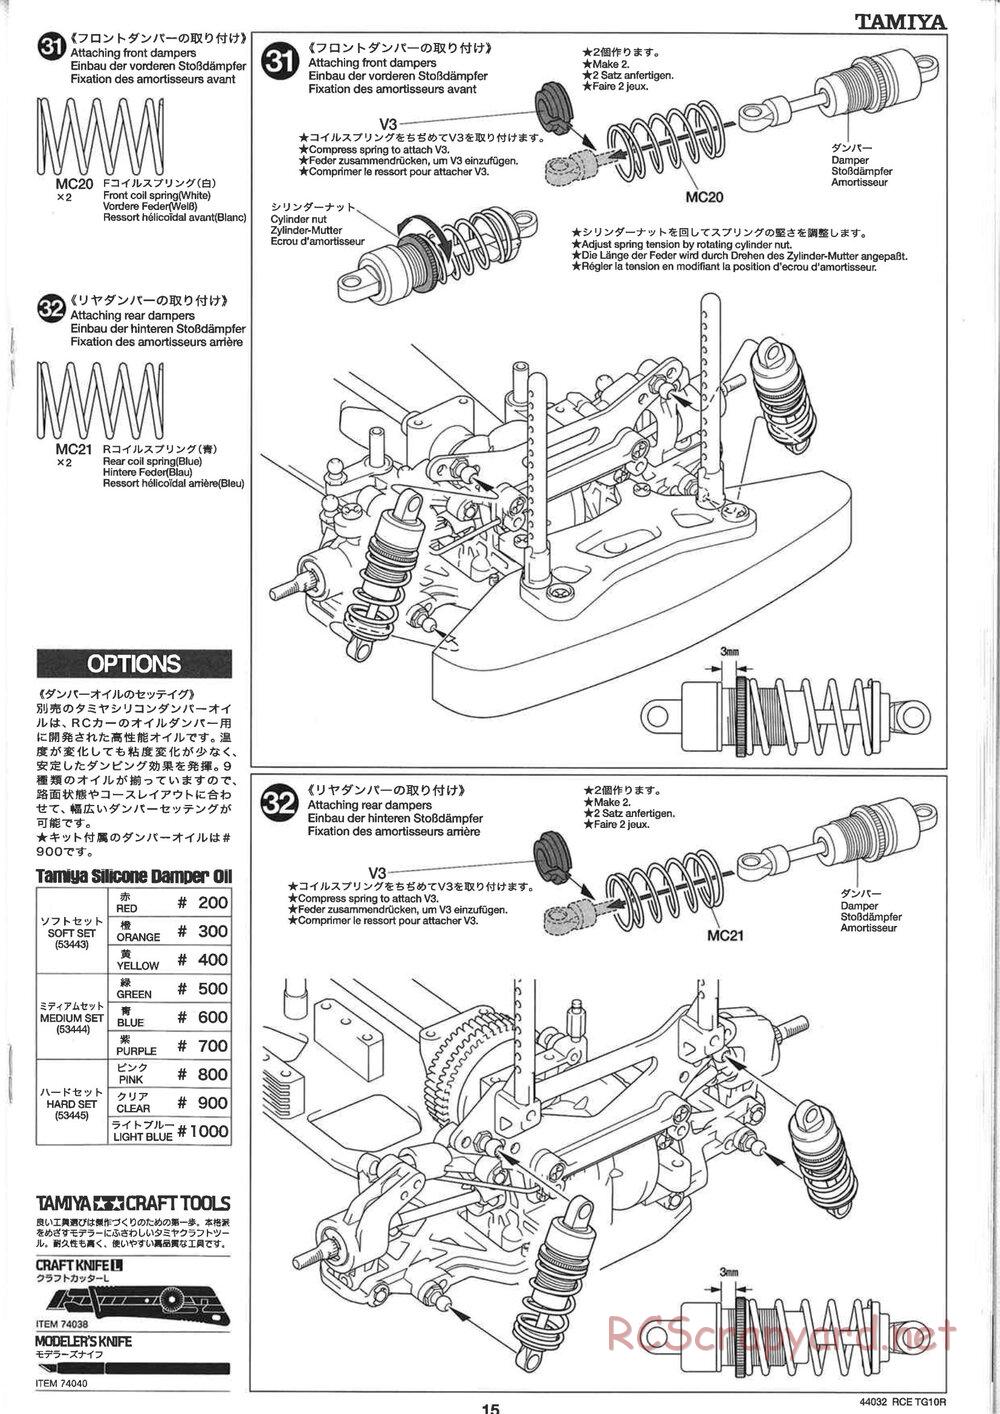 Tamiya - TG10R Chassis - Manual - Page 15